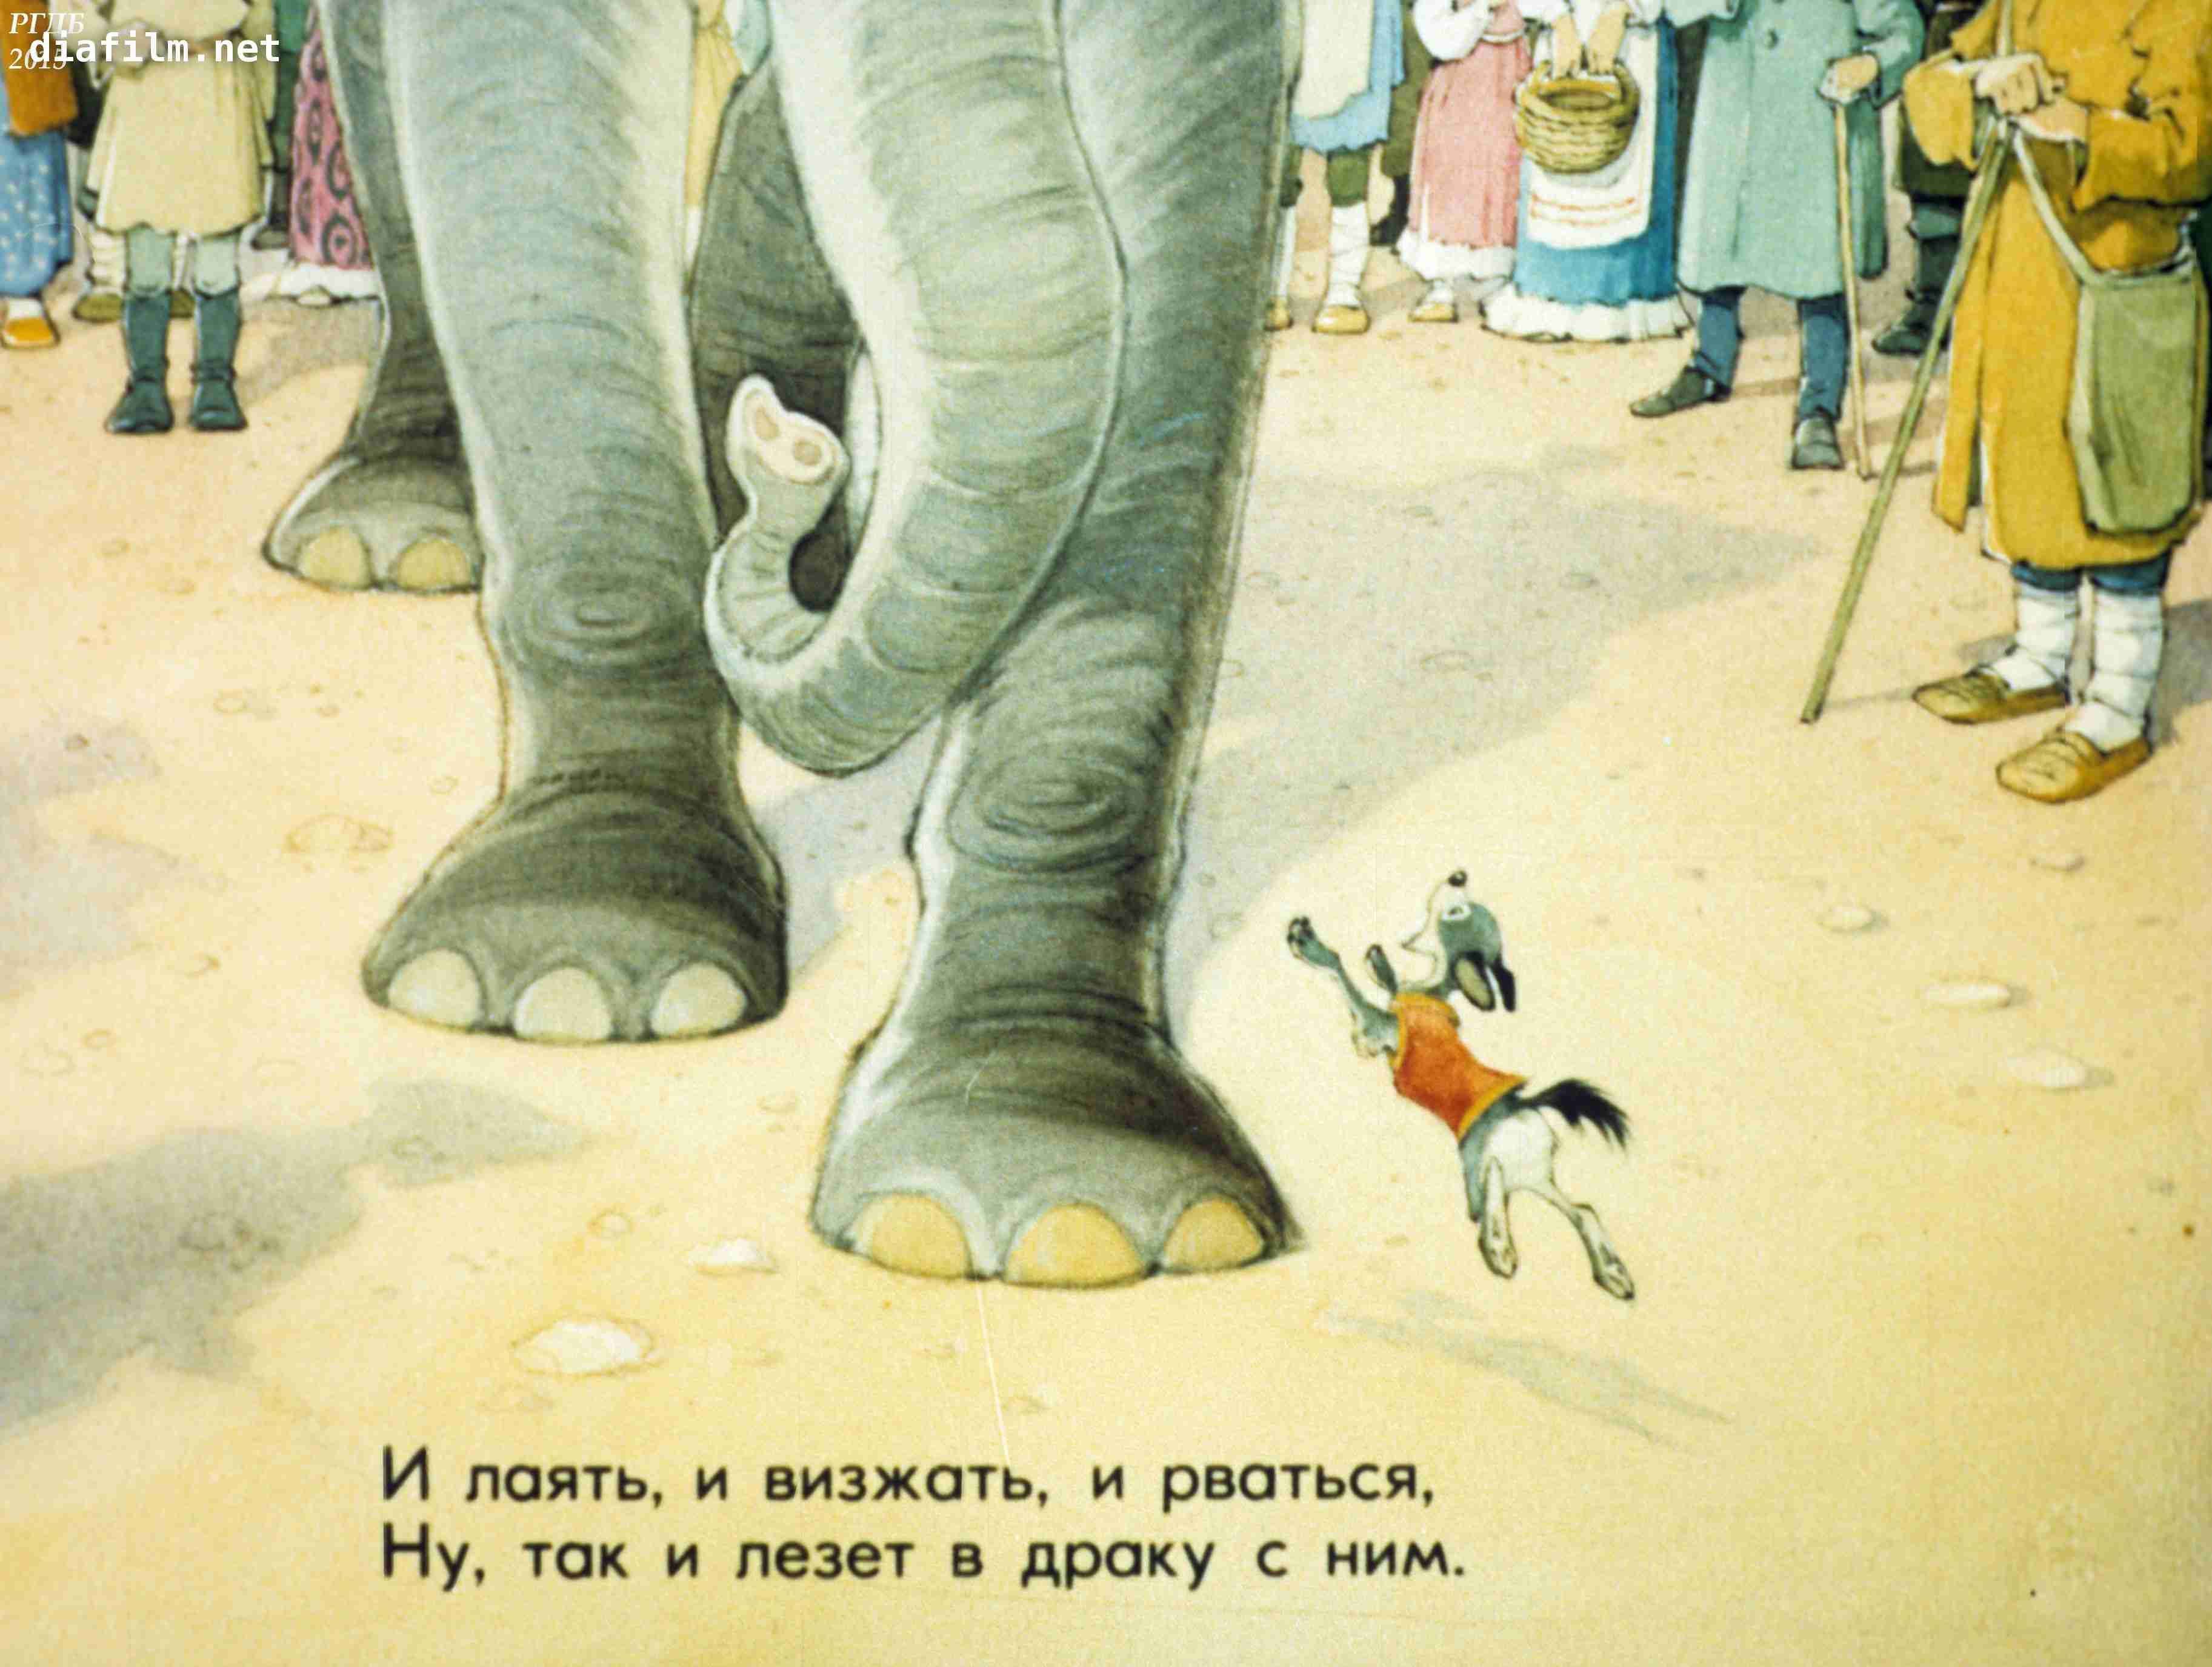 Знать она сильна что лает на слона. Басня слон и моська Крылов. Моська лает на слона. 1983 Басни слон и моська. Басня Крылова собака и слон.